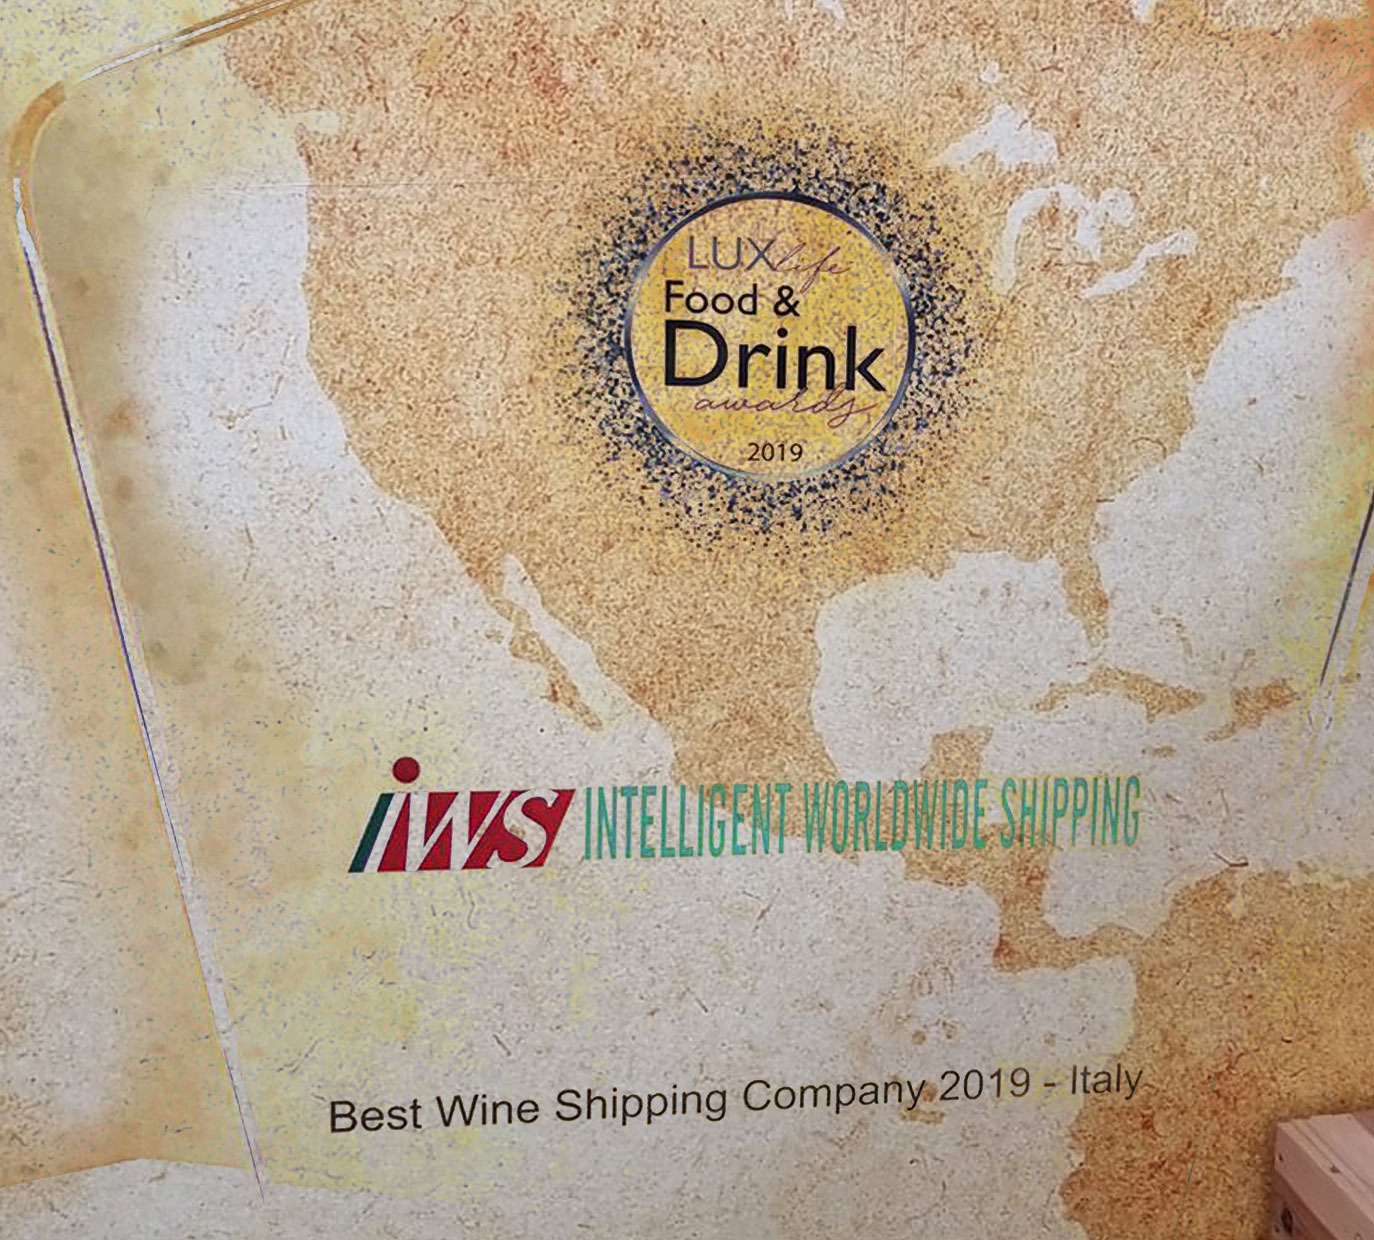 Il conseguimento del prestigioso premio britannico Best Wine Shipping Company